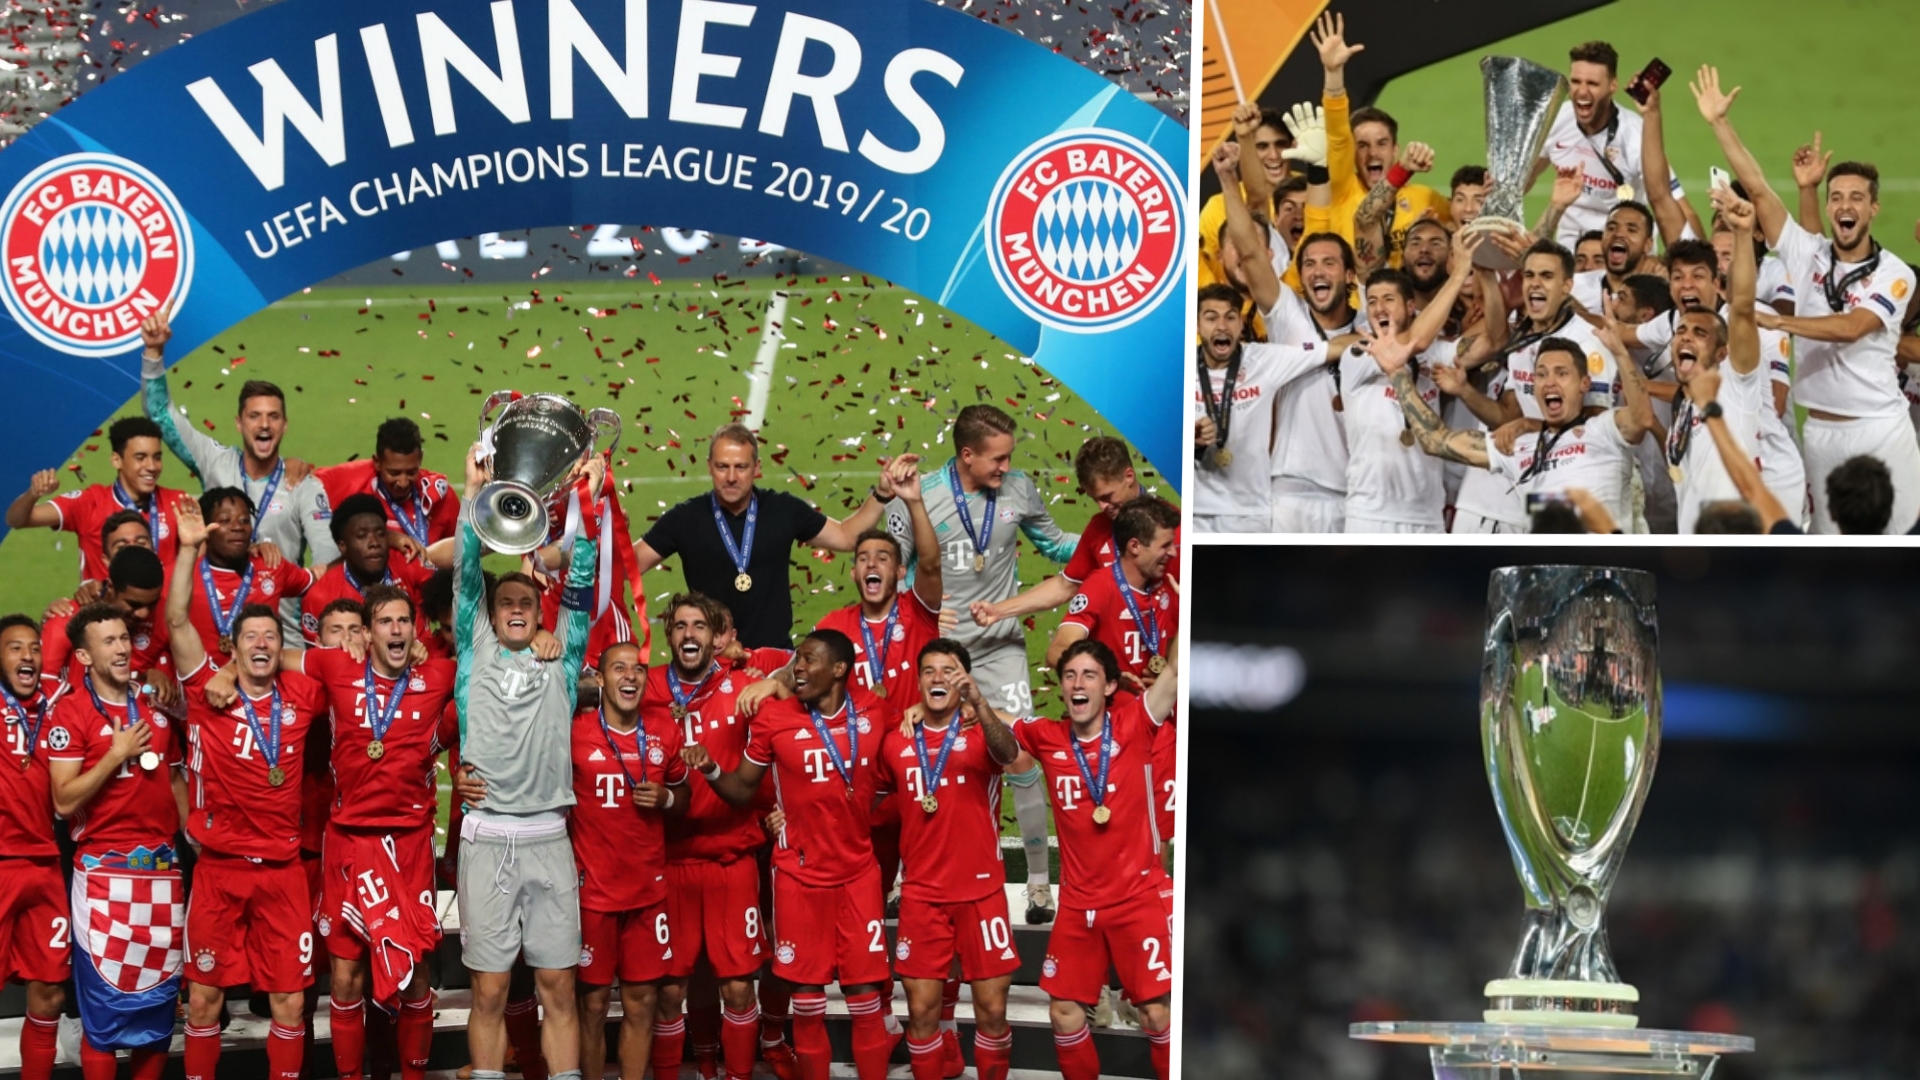 bayern-munich-champions-league-sevilla-europa-league-super-cup-trophy-composite-1ecnfdcl1h4pp1wcq1pkd41l35